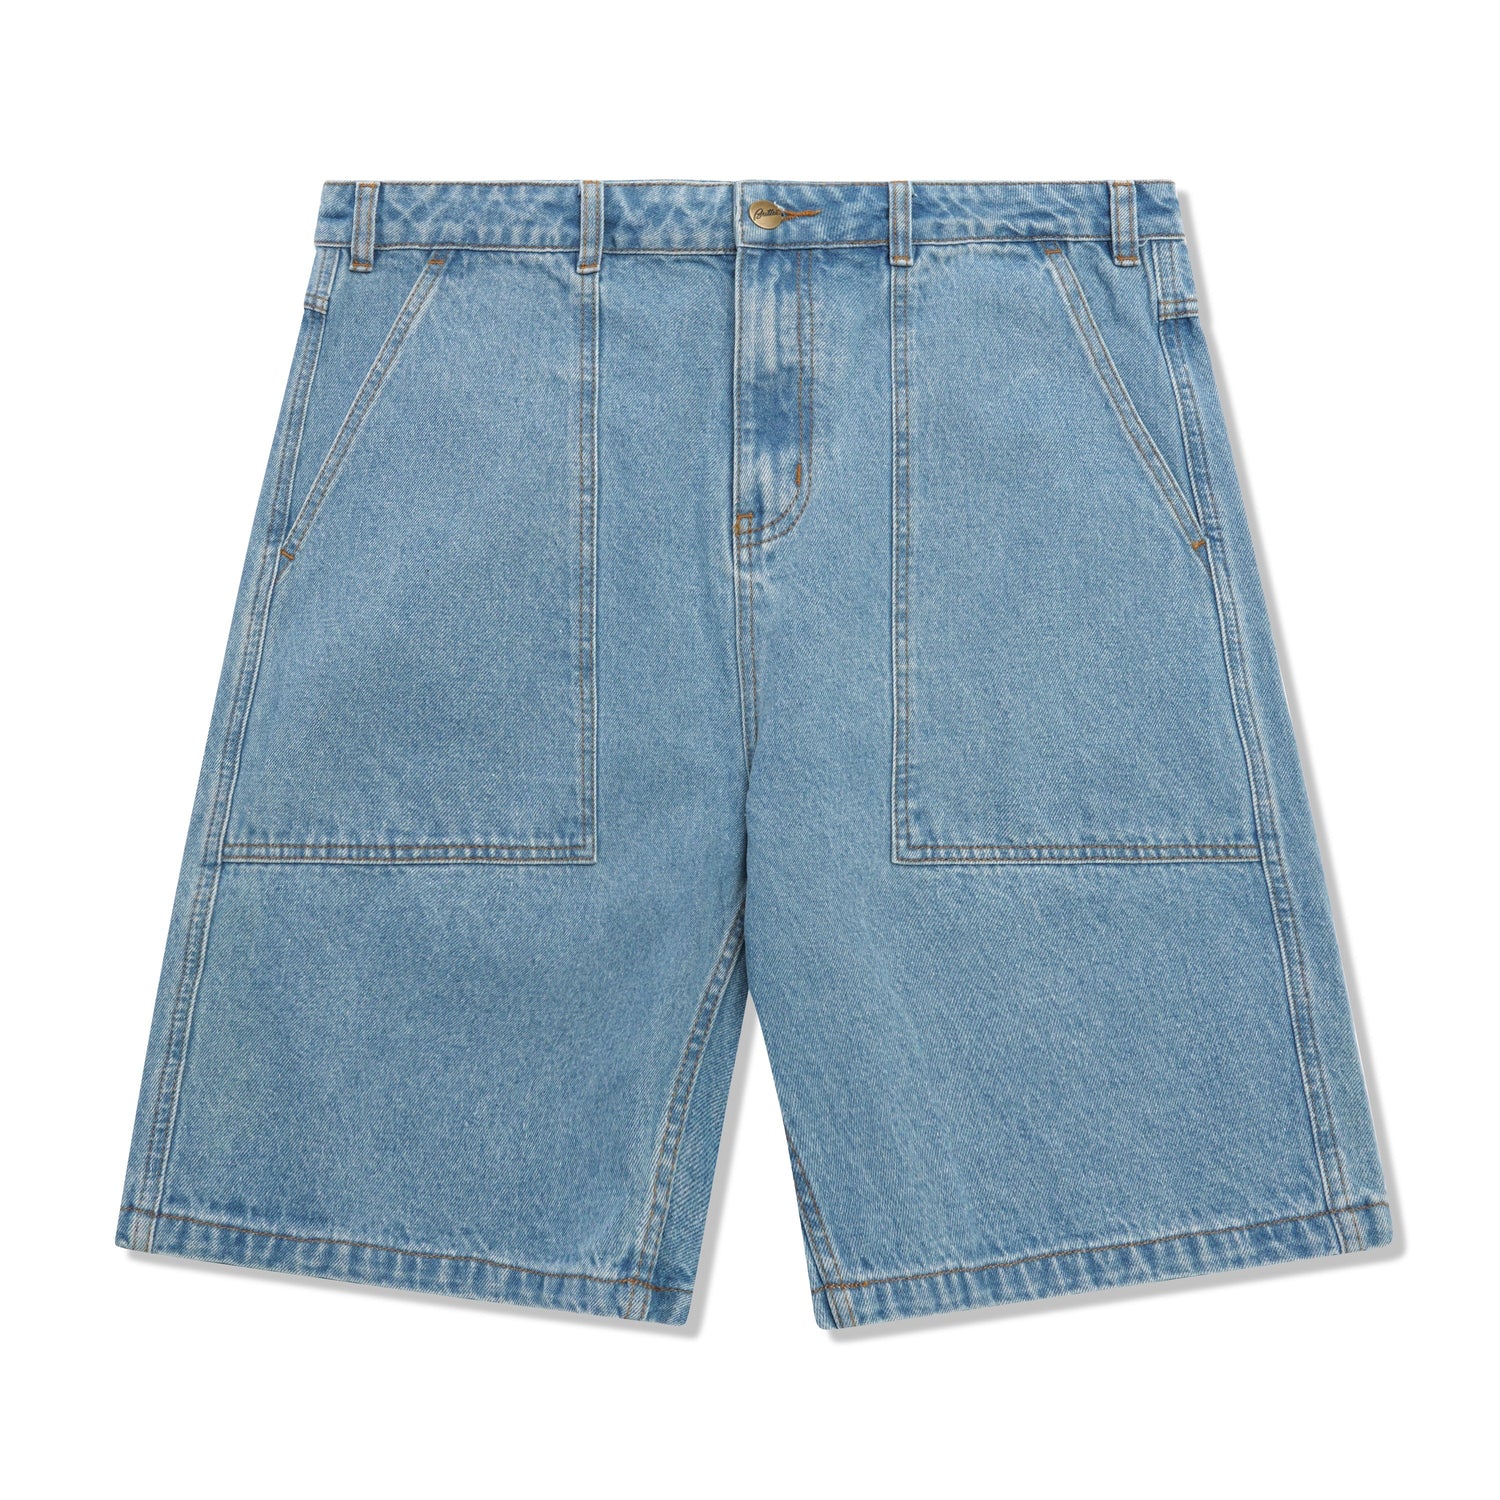 Patch Pocket Denim Shorts, Washed Indigo